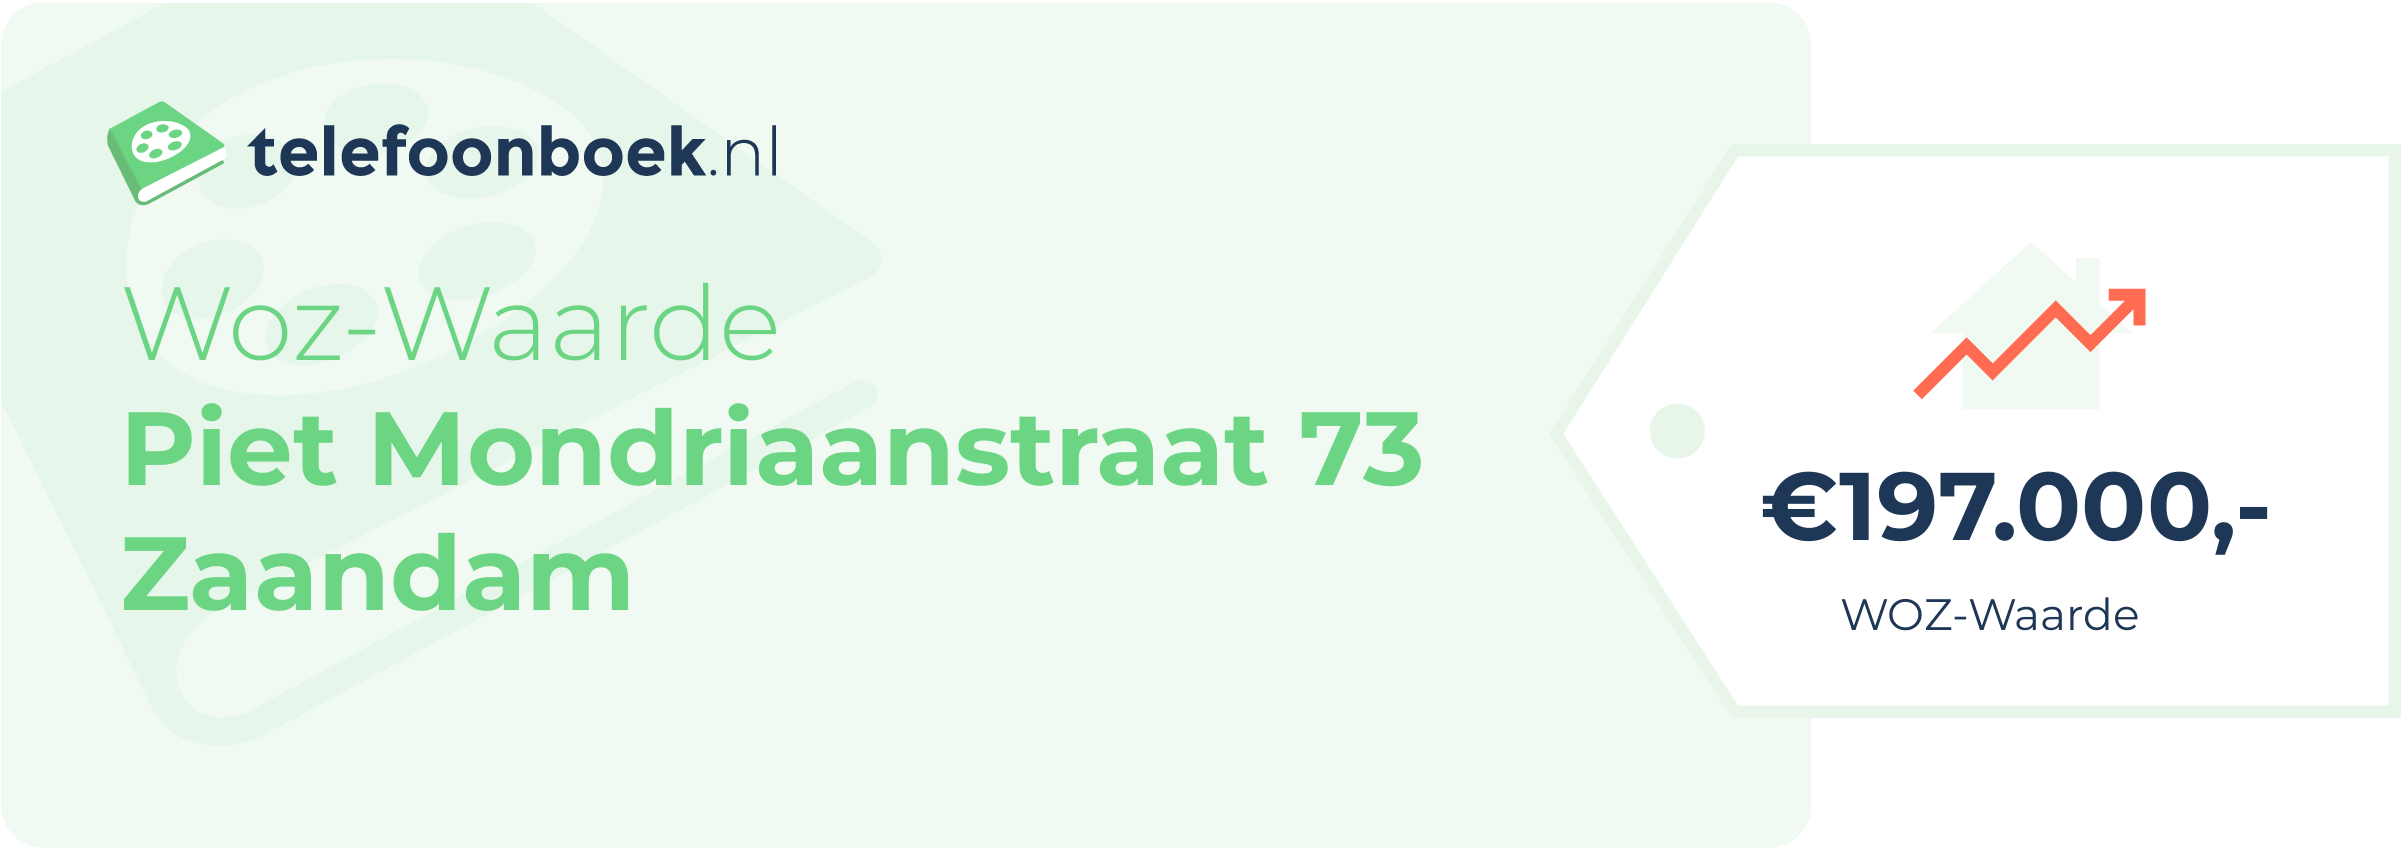 WOZ-waarde Piet Mondriaanstraat 73 Zaandam